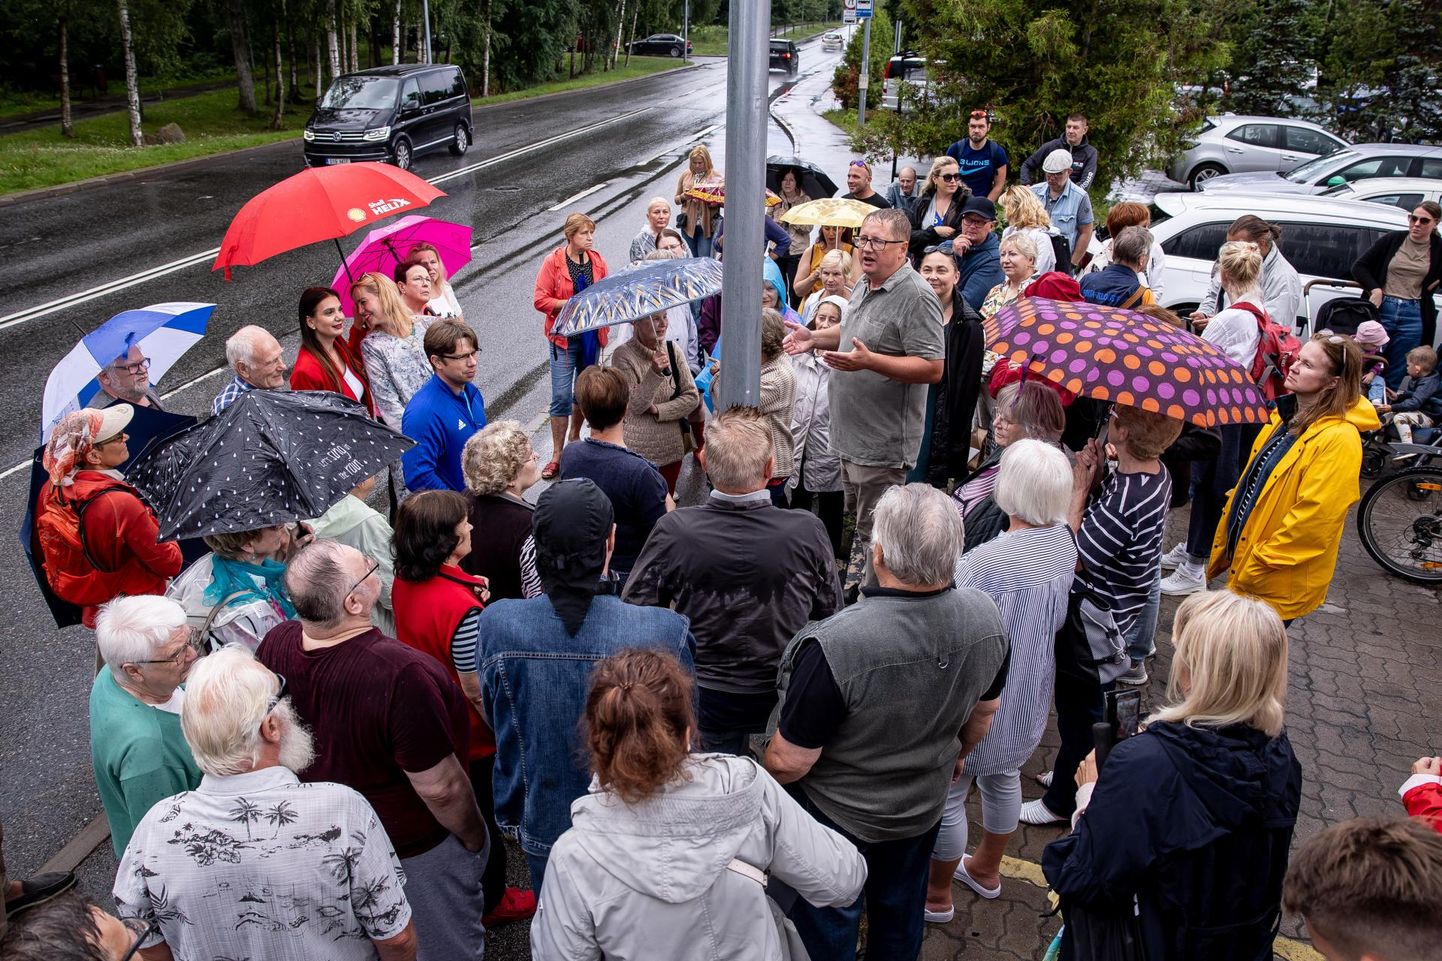 Esmaspäeva õhtul kogunes üle saja inimese Mähe aedlinna bussipeatusse, et nõuda bussi nr 8 senise marsruudi säilitamist.